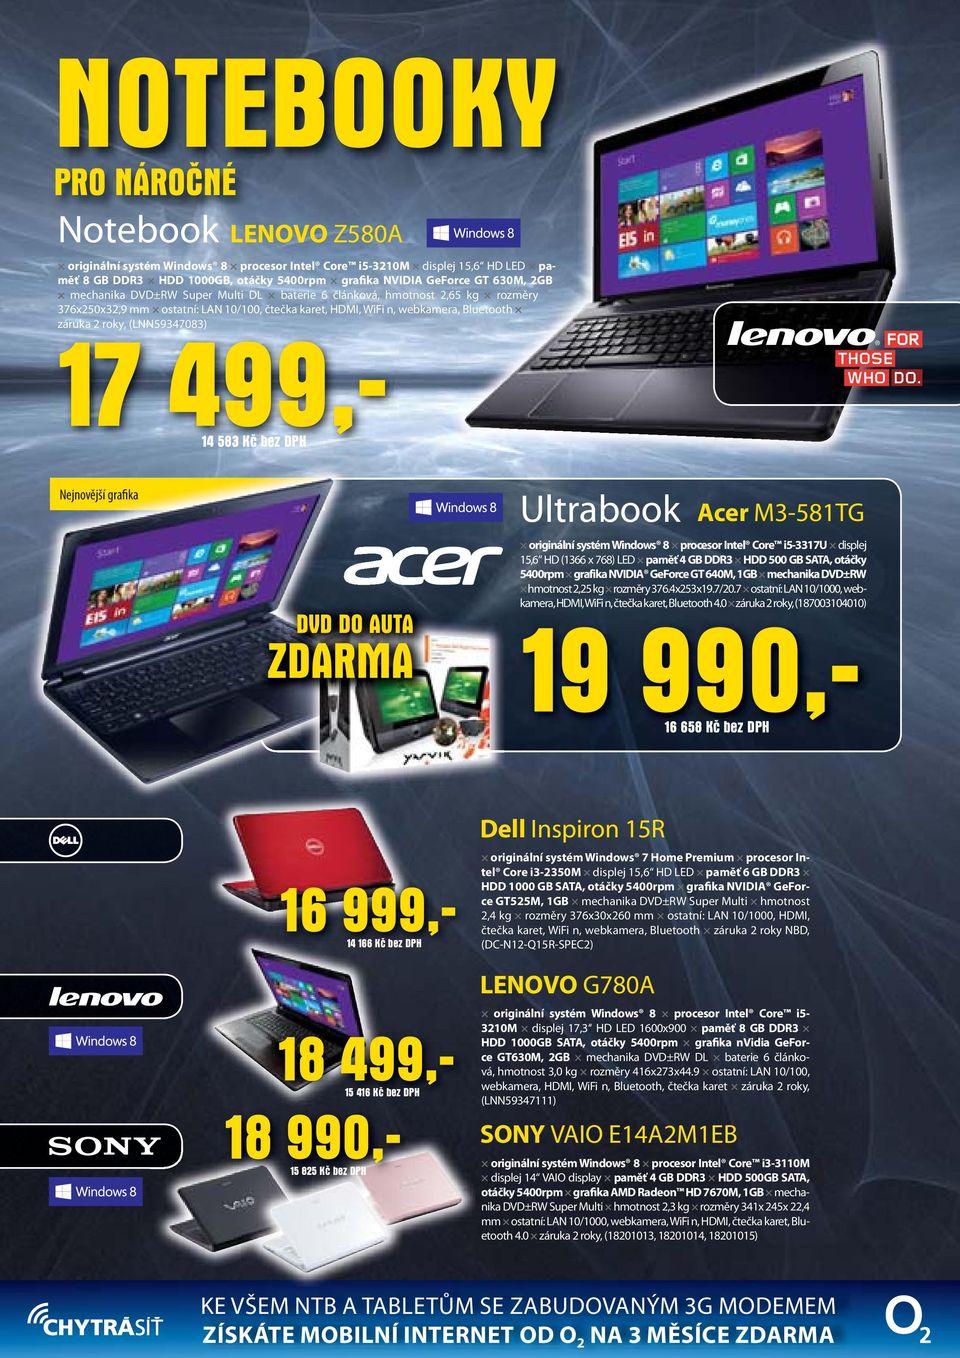 499,- 14 583 Kč bez DPH Nejnovější grafika DVD DO AUTA ZDARMA Ultrabook Acer M3-581TG originální systém Windows 8 procesor Intel Core i5-3317u displej 15,6 HD (1366 x 768) LED paměť 4 GB DDR3 HDD 500